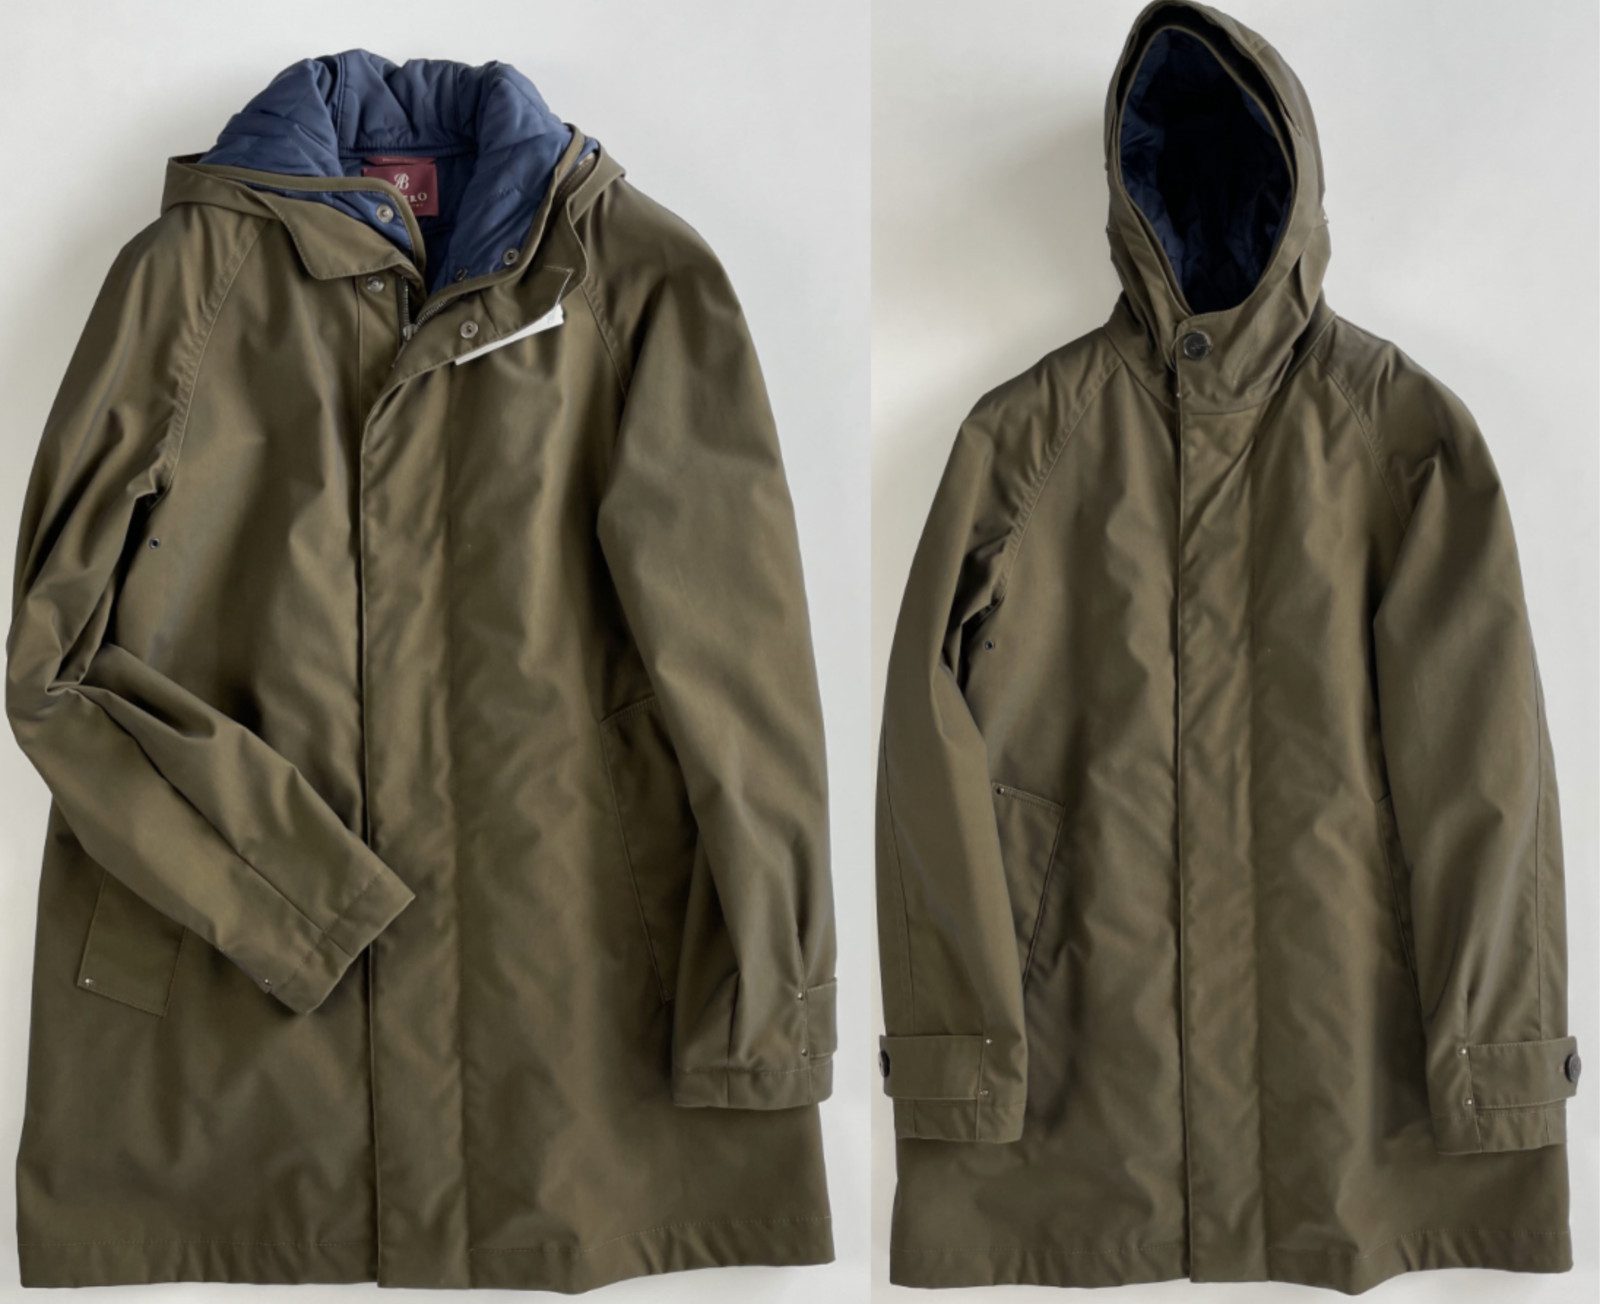 Albero Wollmantel ALBERO ITALY 2in1 Outdoor Parka Vest Weste Jacket Mantel Winter Coat J